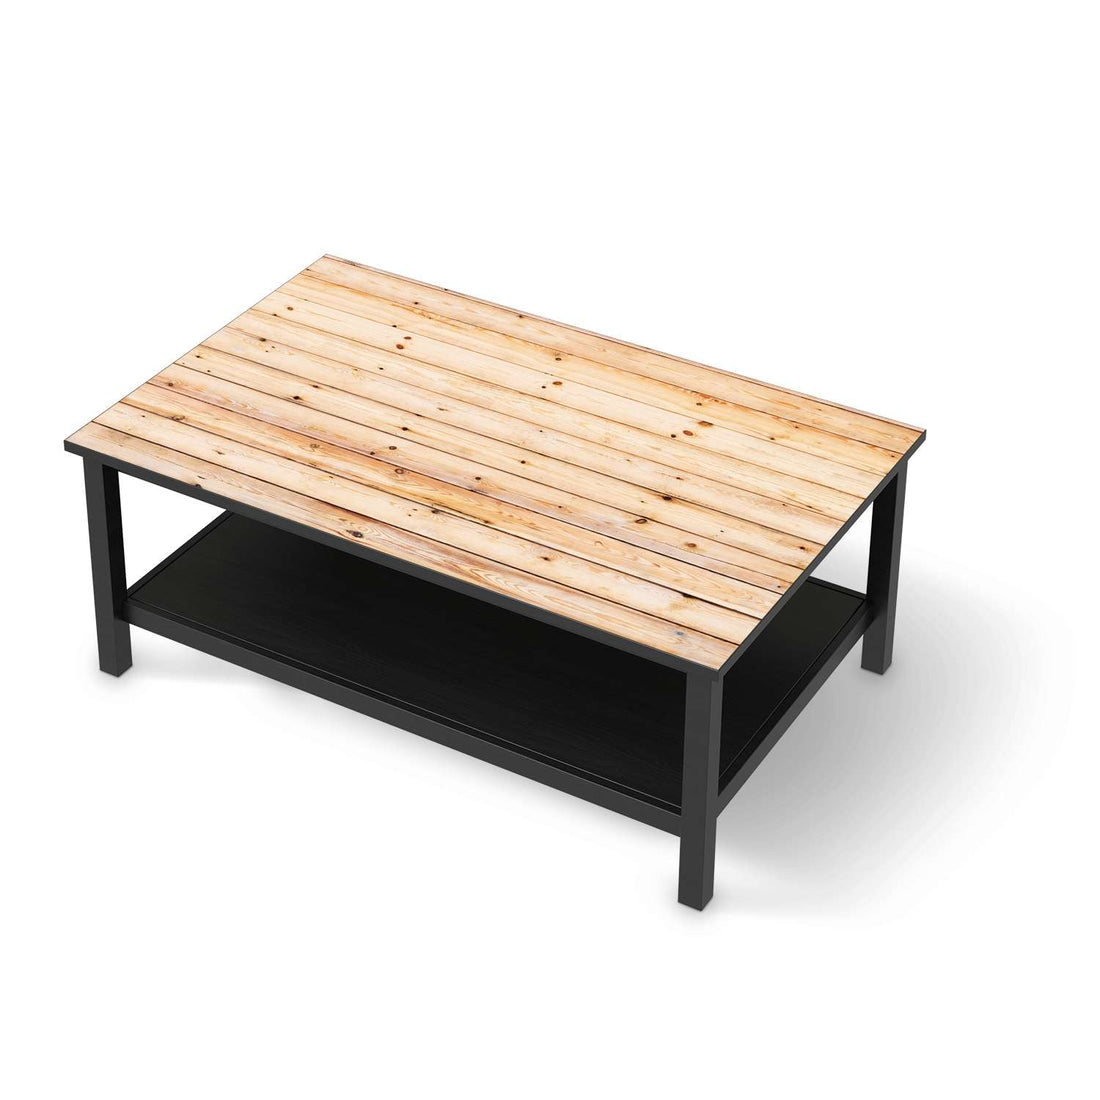 Möbelfolie Bright Planks - IKEA Hemnes Couchtisch 118x75 cm - schwarz